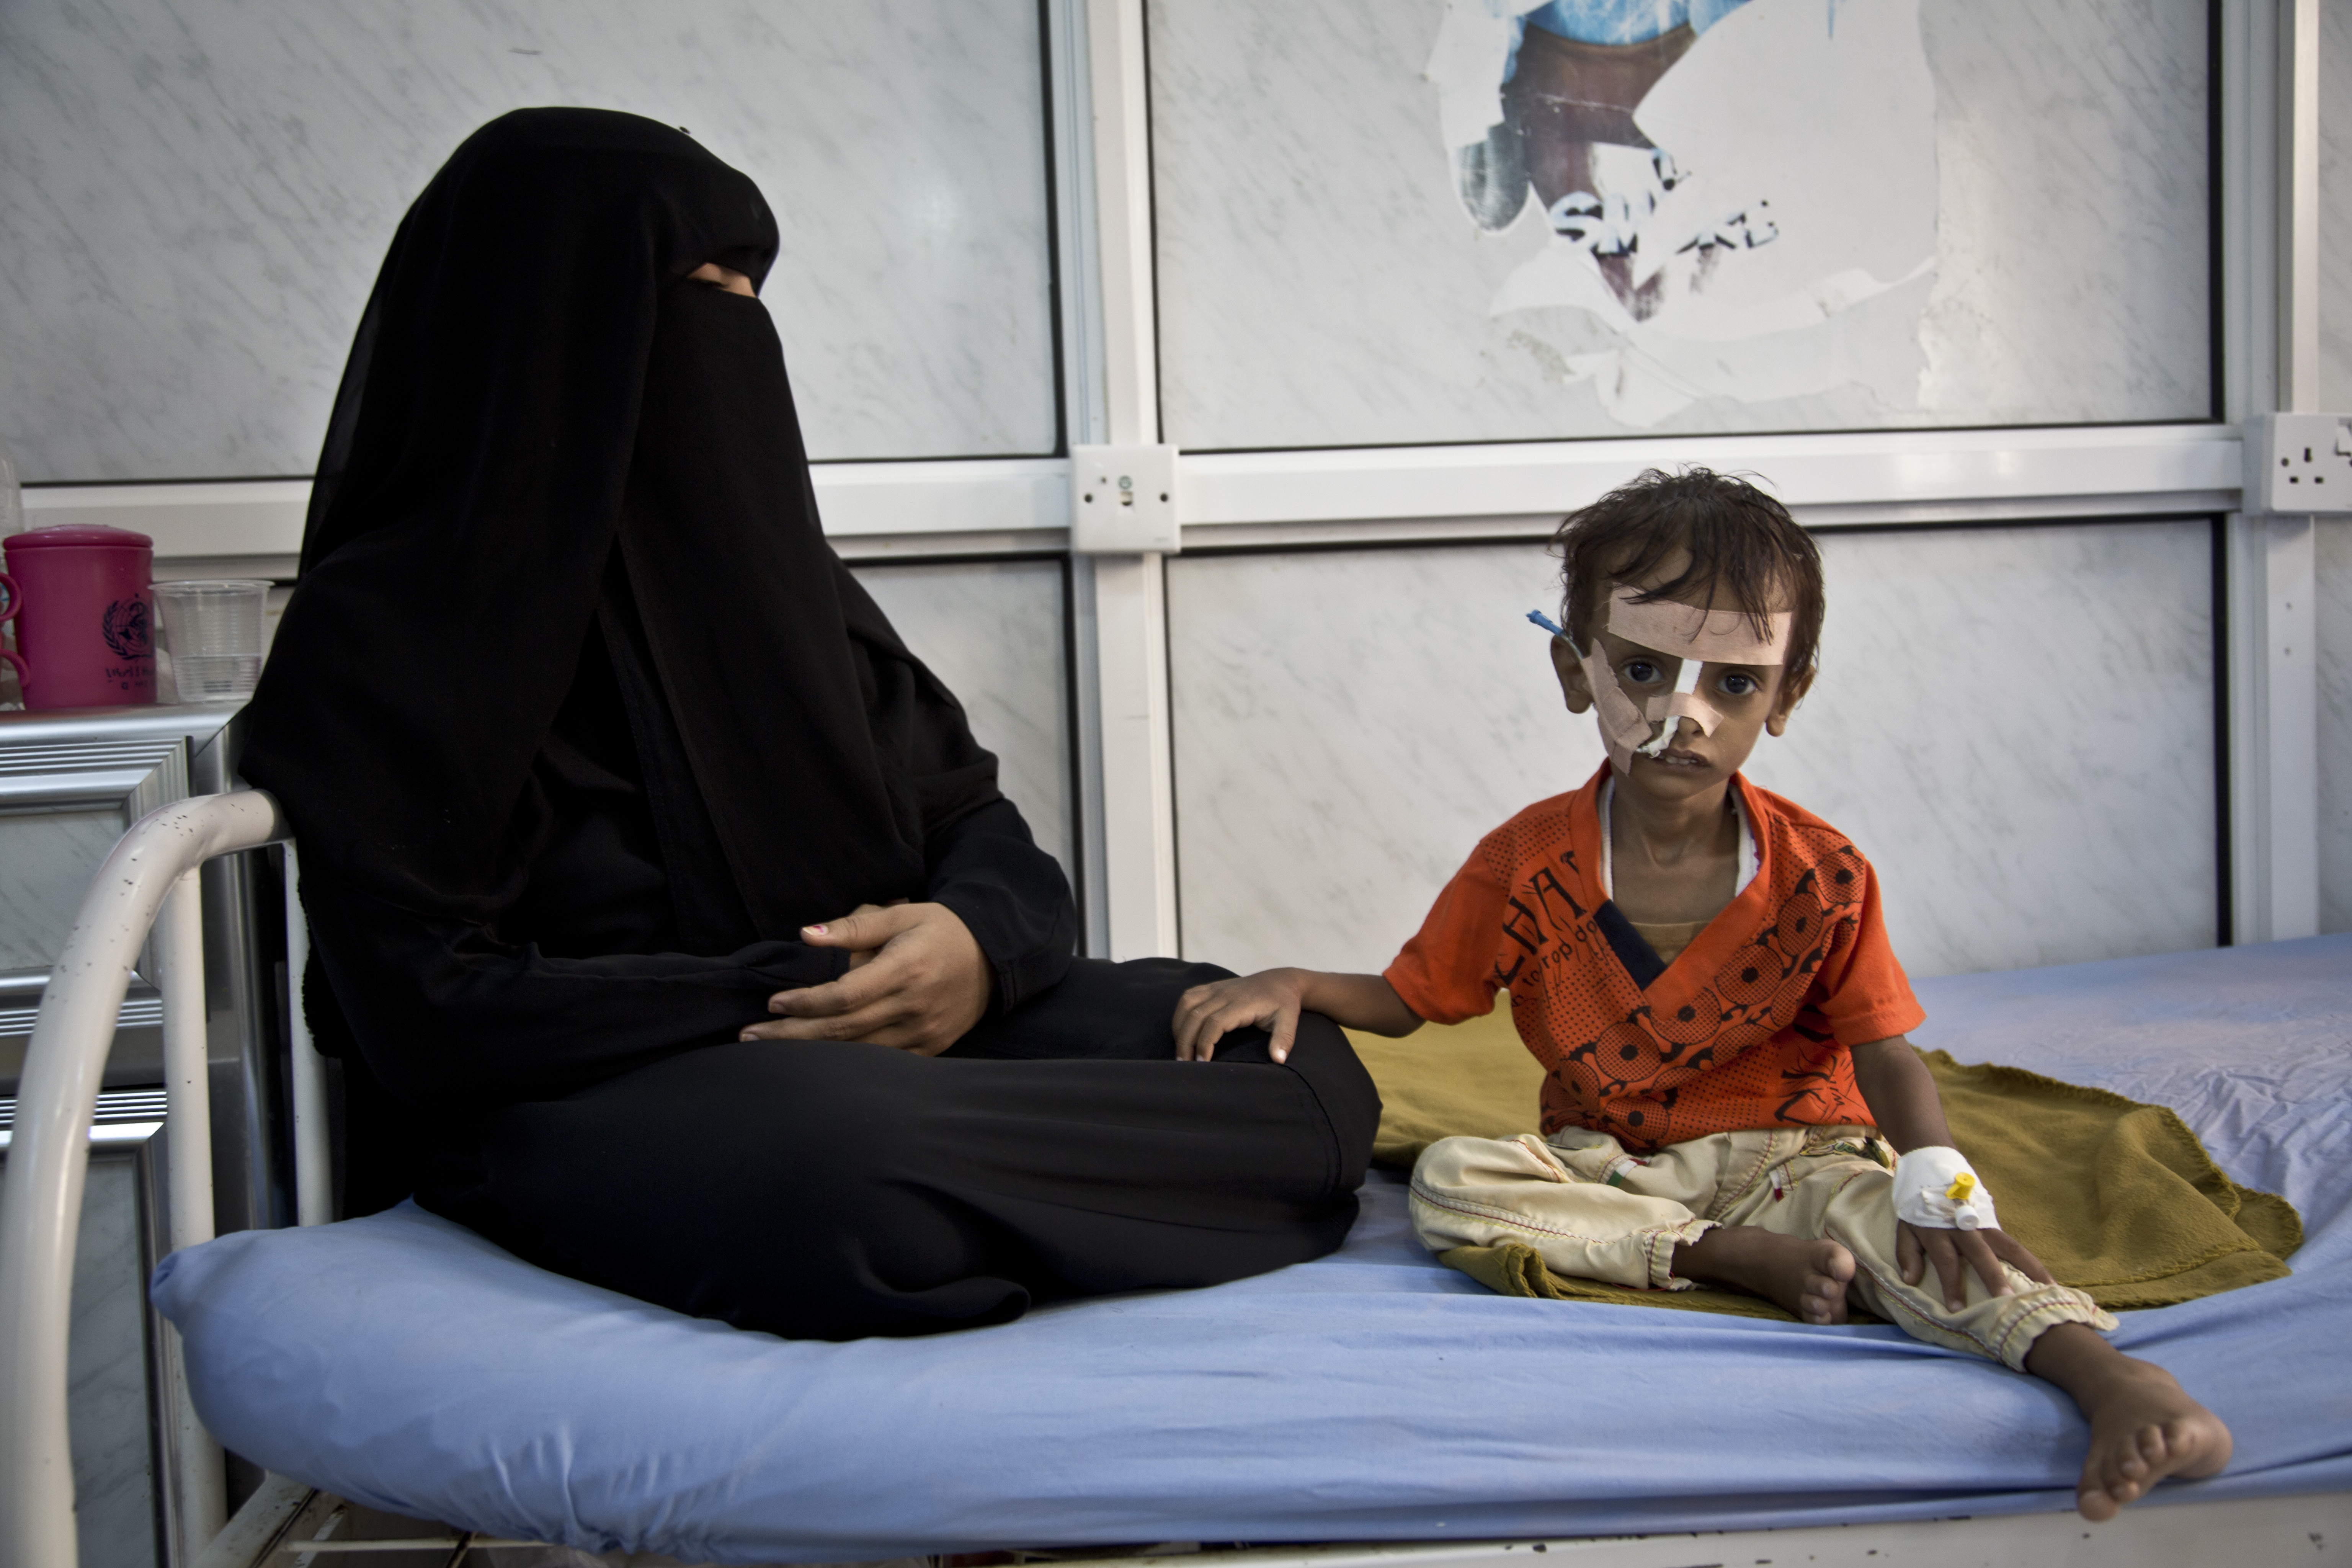 Dichiarazione congiunta OMS/UNICEF/WFP - Leaders delle Nazioni Unite fanno appello per una revoca immediata del blocco umanitario in Yemen. A rischio milioni di vite